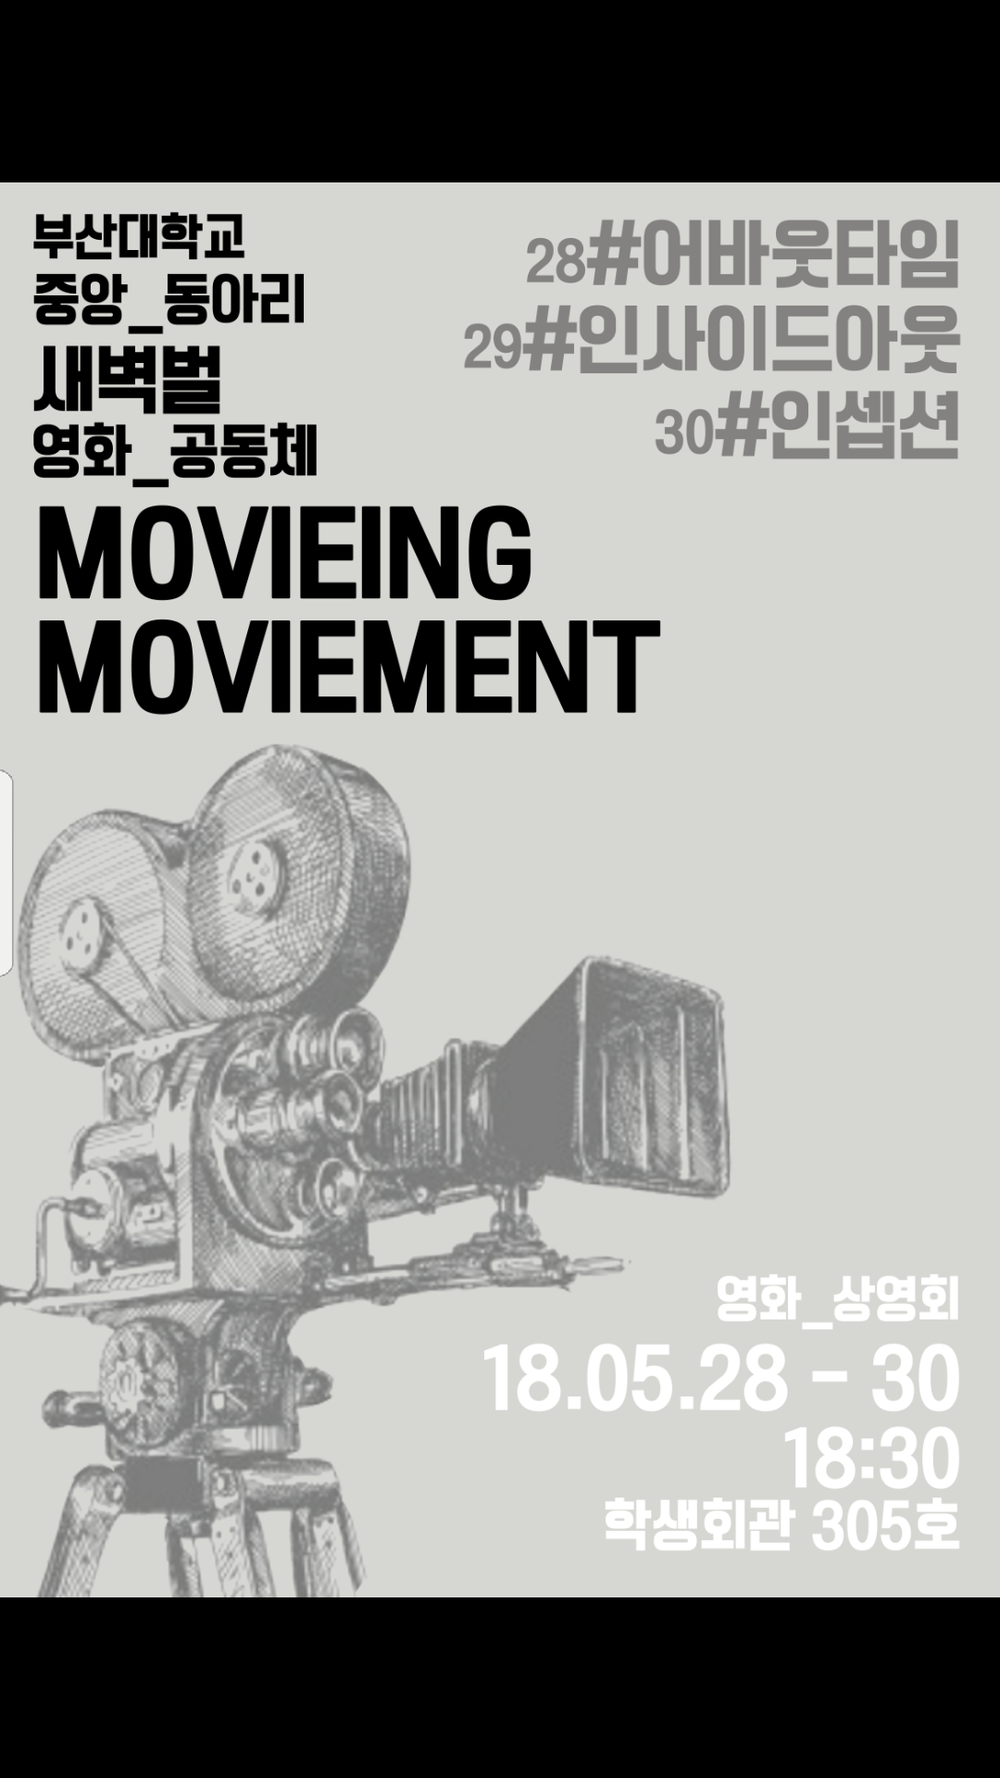 Screenshot_20180526-174750.png : 중앙동아리 '영화공동체 새벽벌'에서 영화상영회를 엽니다!